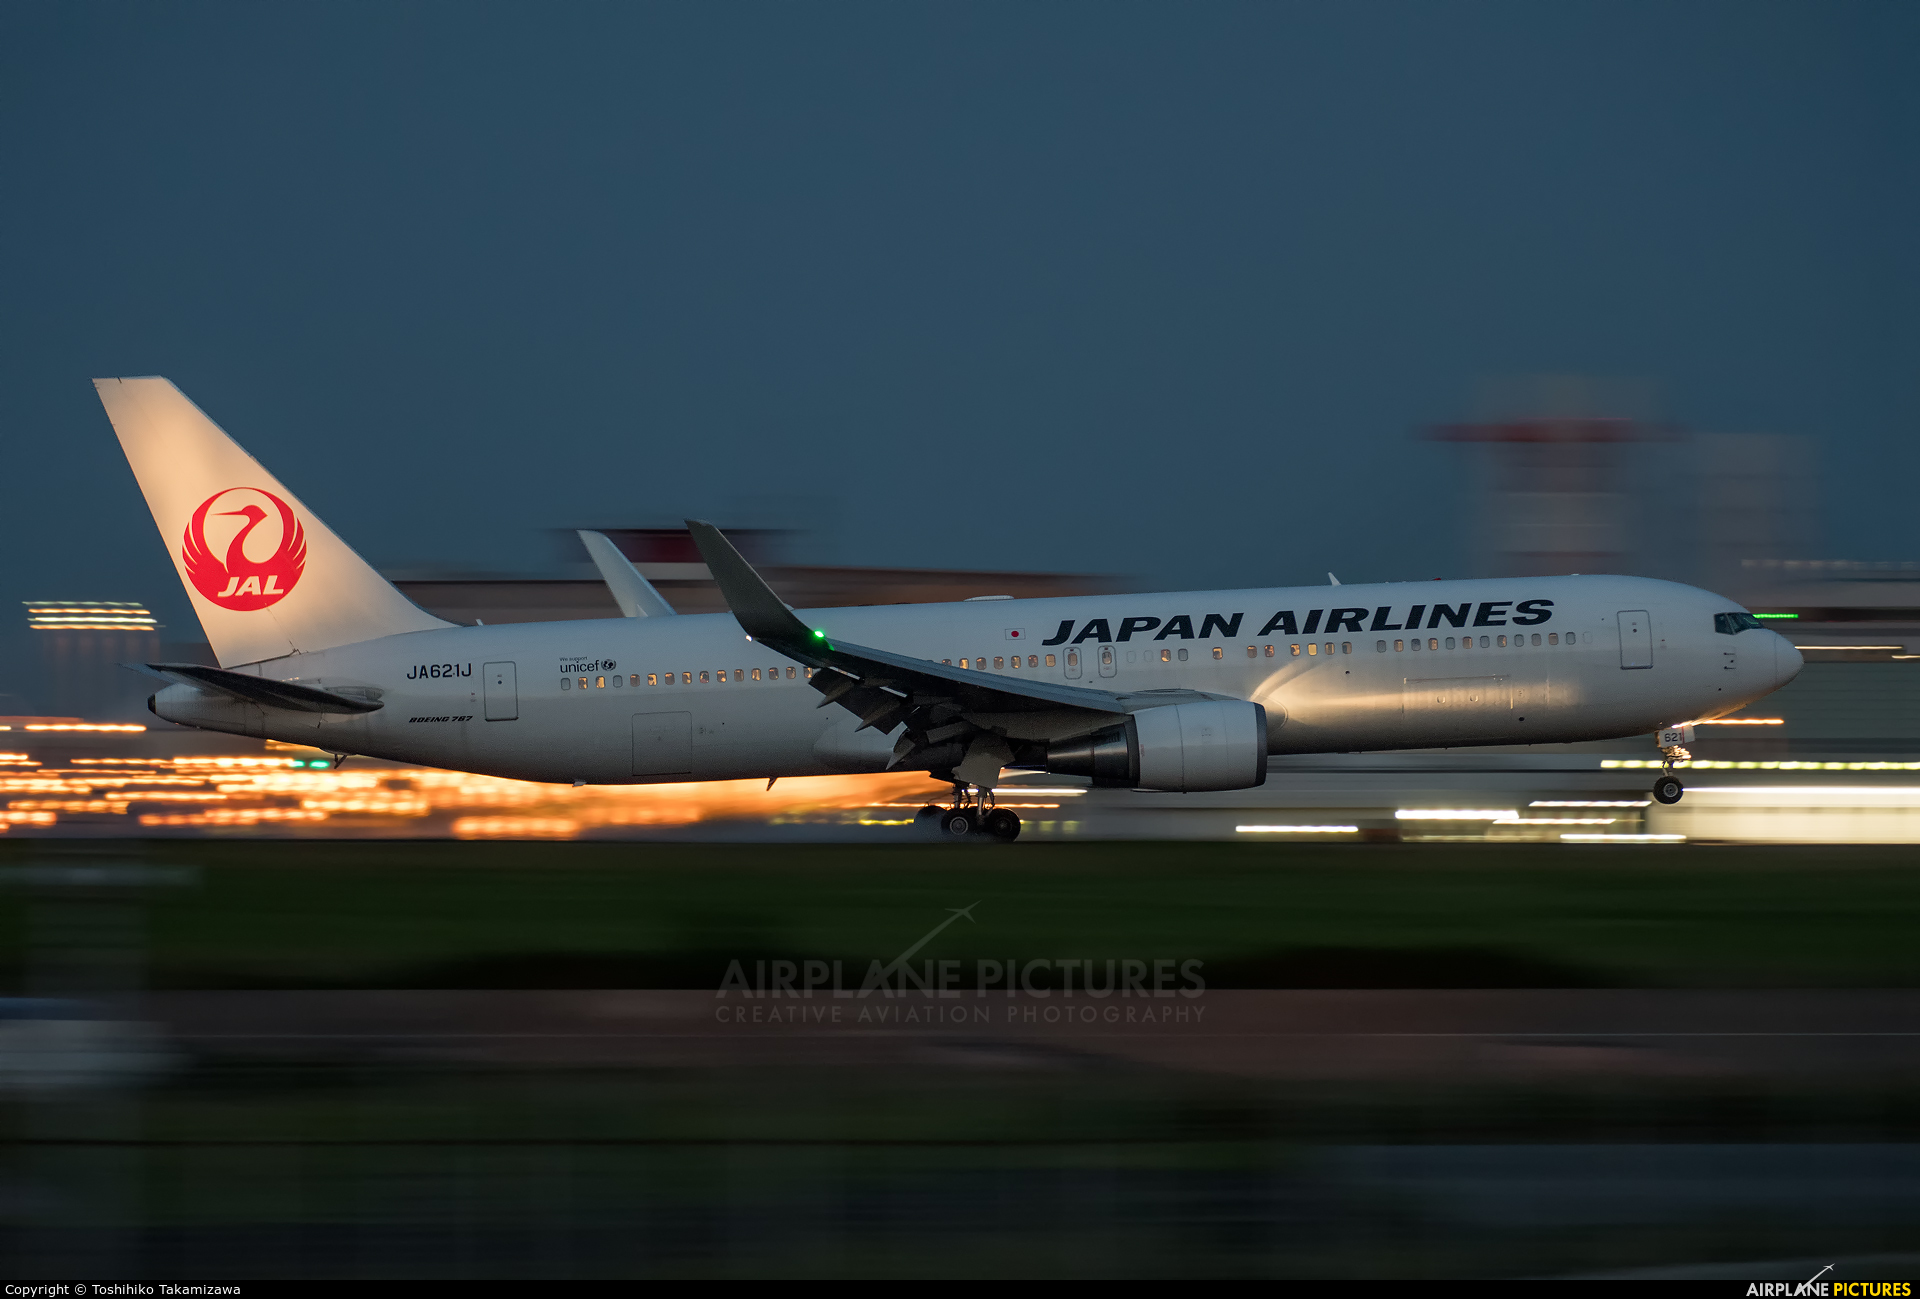 JAL - Japan Airlines JA621J aircraft at Tokyo - Haneda Intl